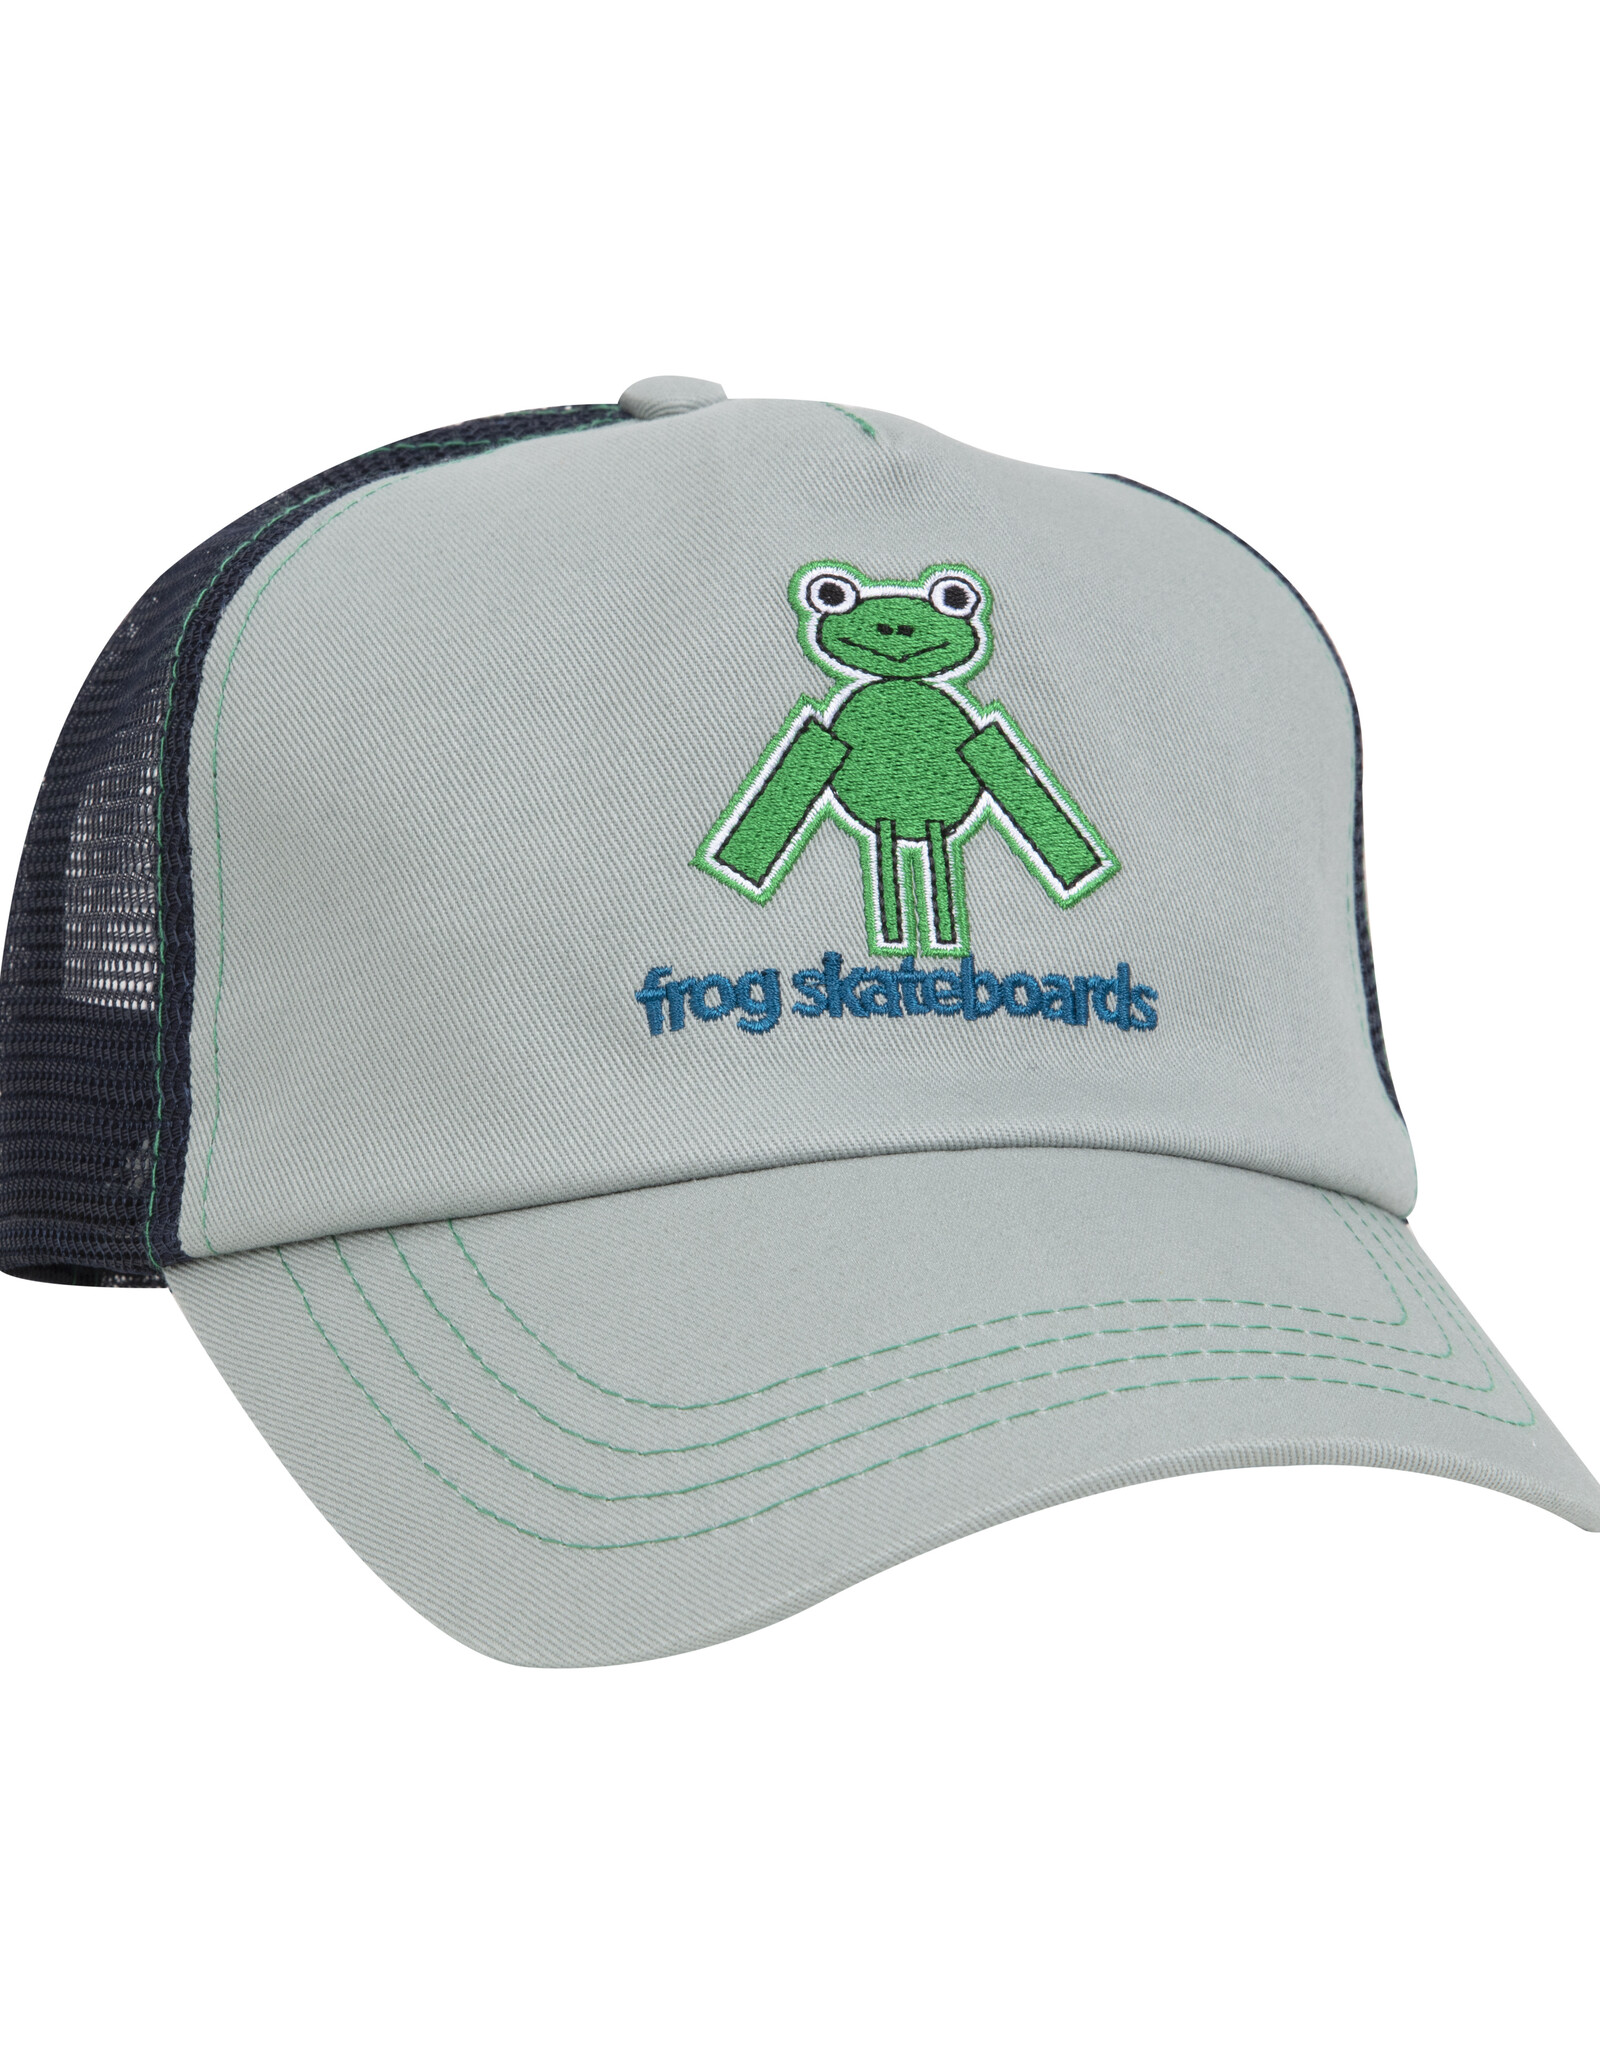 FROG FROG PERFECT FROG TRUCKER HAT - GREY/NAVY